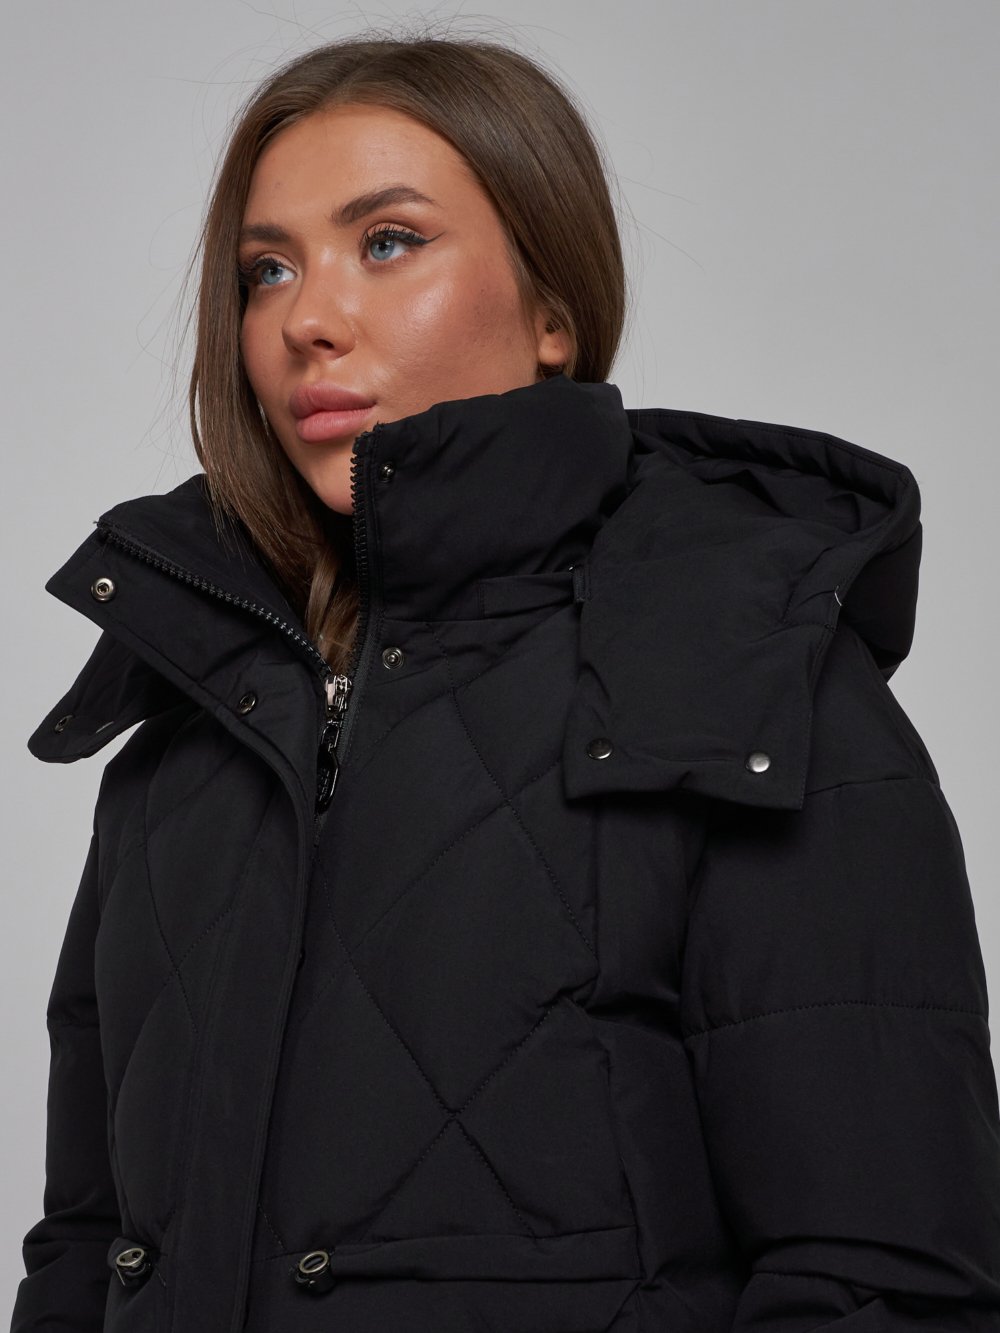 Купить куртку зимнюю оптом от производителя недорого в Москве 52302Ch 1